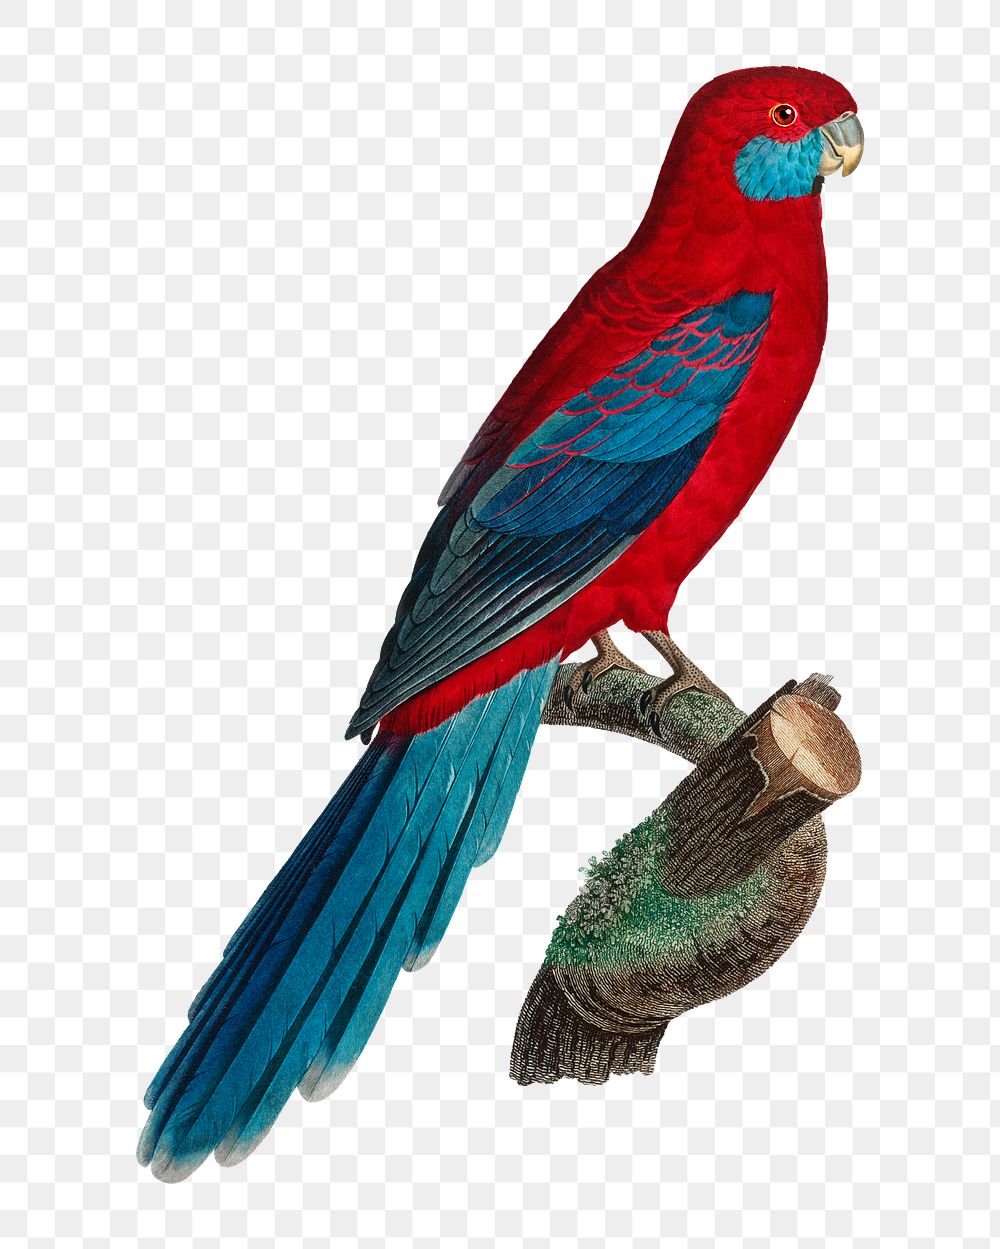 Crimson Rosella parrot png bird sticker, vintage animal illustration, transparent background